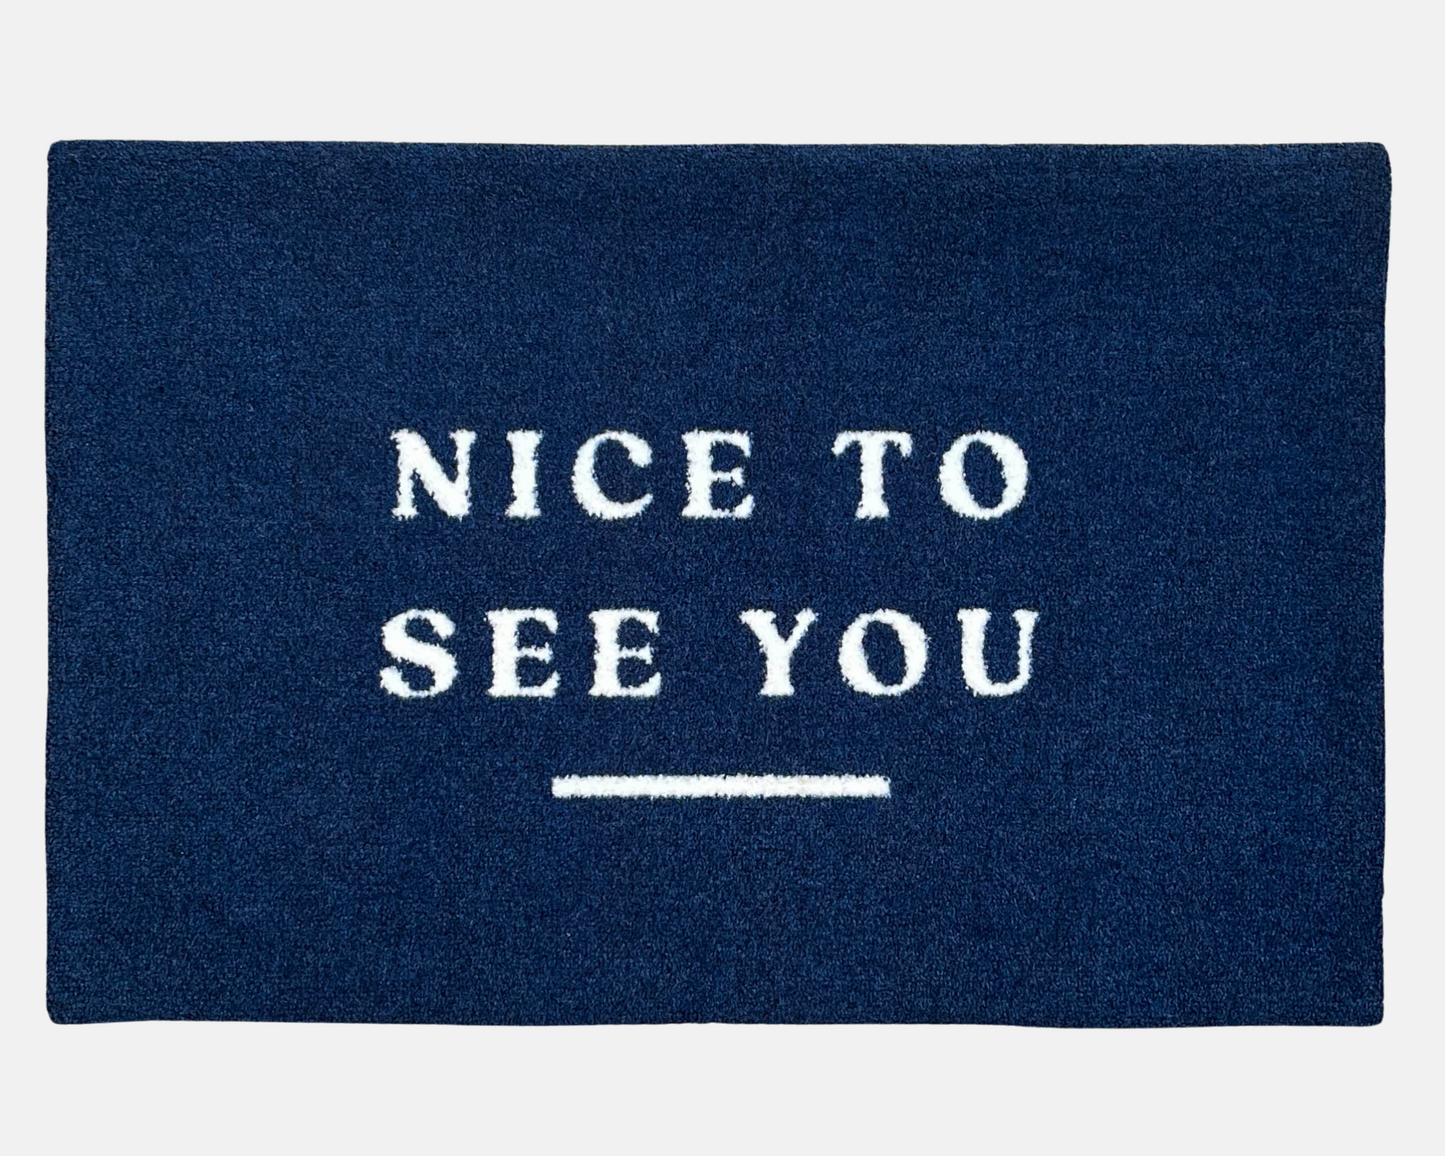 Nice To See You Doormat | Navy